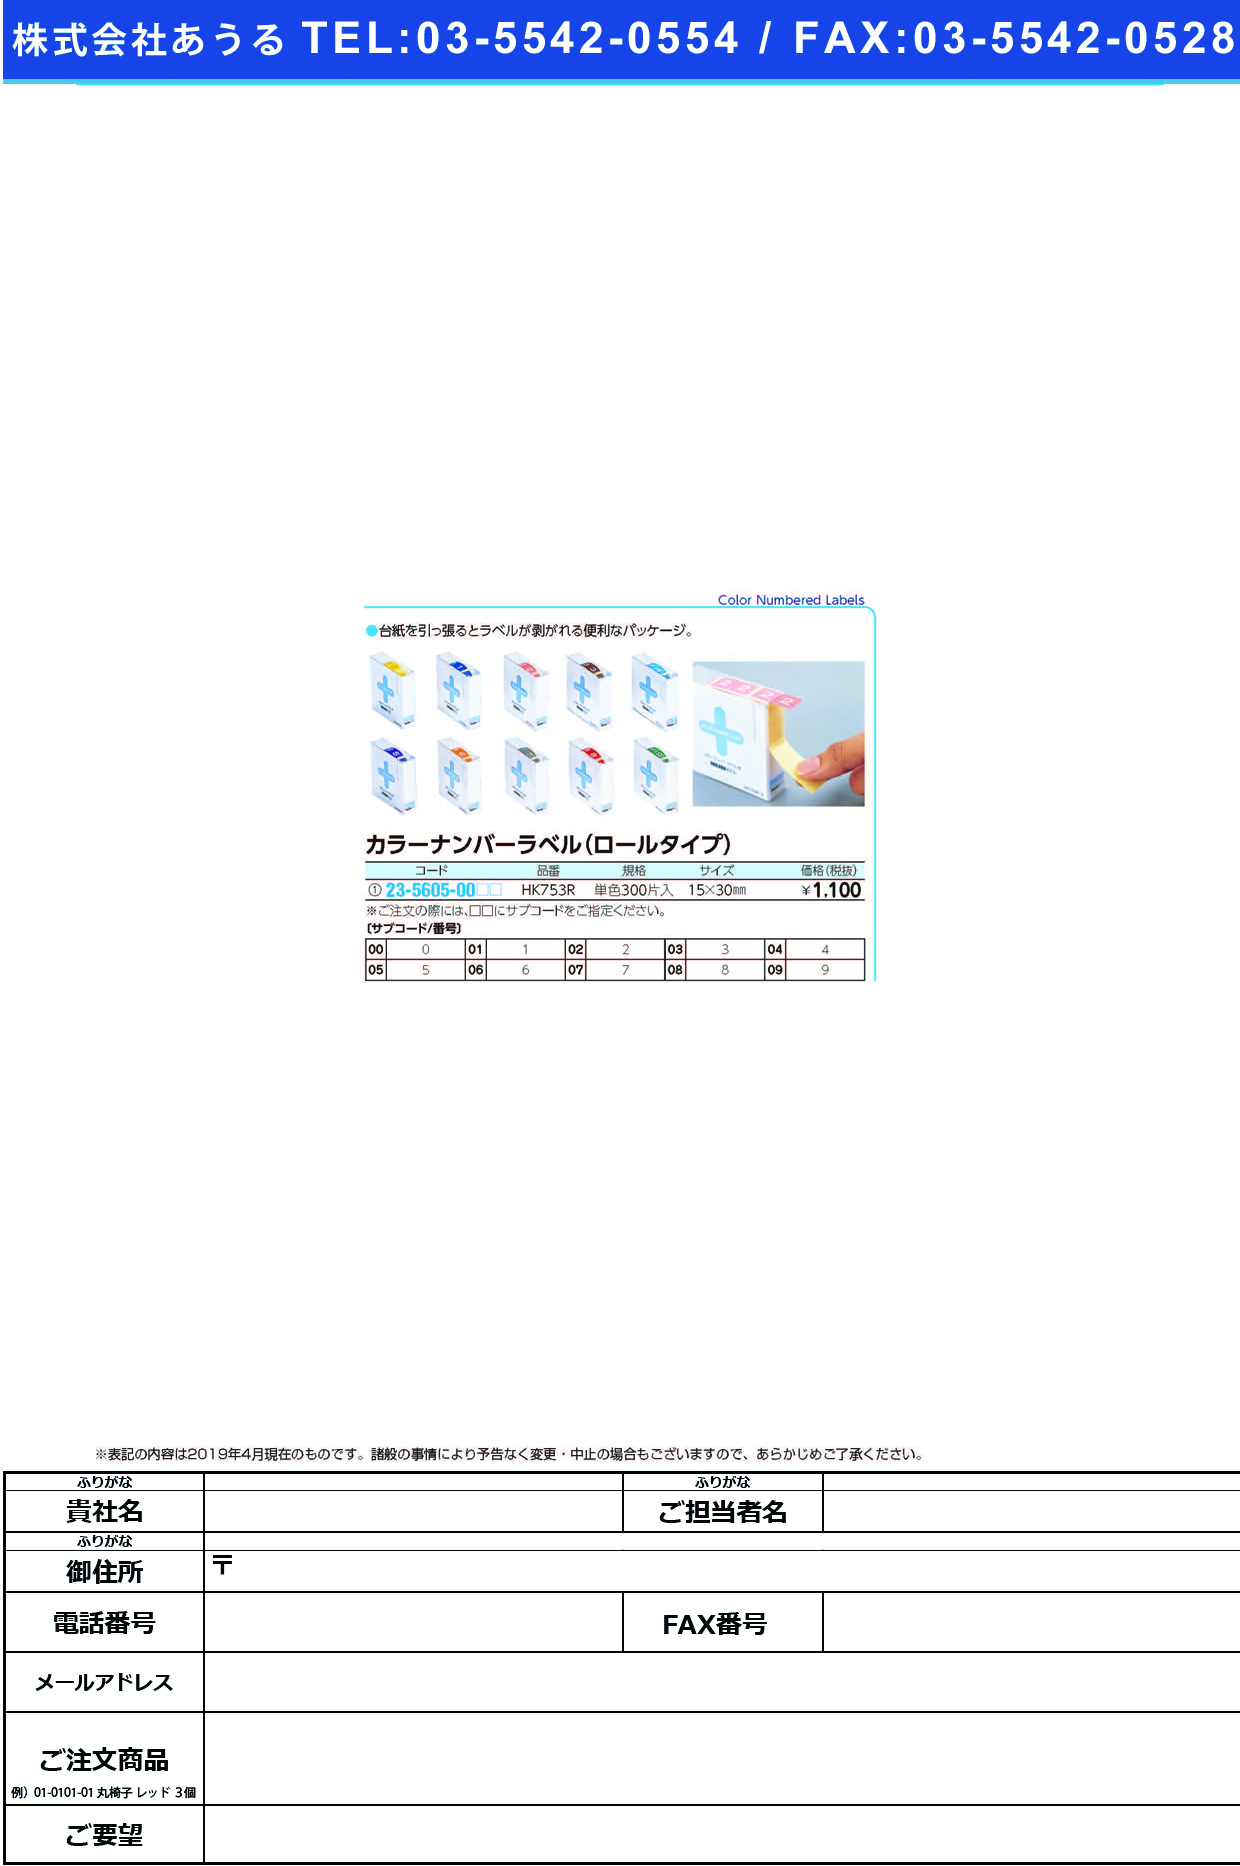 (23-5605-00)カラーナンバーラベル（Ｍ）ロール HK753R(ﾀﾝﾊﾞﾝ)300ﾍﾝｲﾘ ｶﾗｰﾅﾝﾊﾞｰﾗﾍﾞﾙMﾛｰﾙ ７(ＬＩＨＩＴＬＡＢ．)【1箱単位】【2019年カタログ商品】